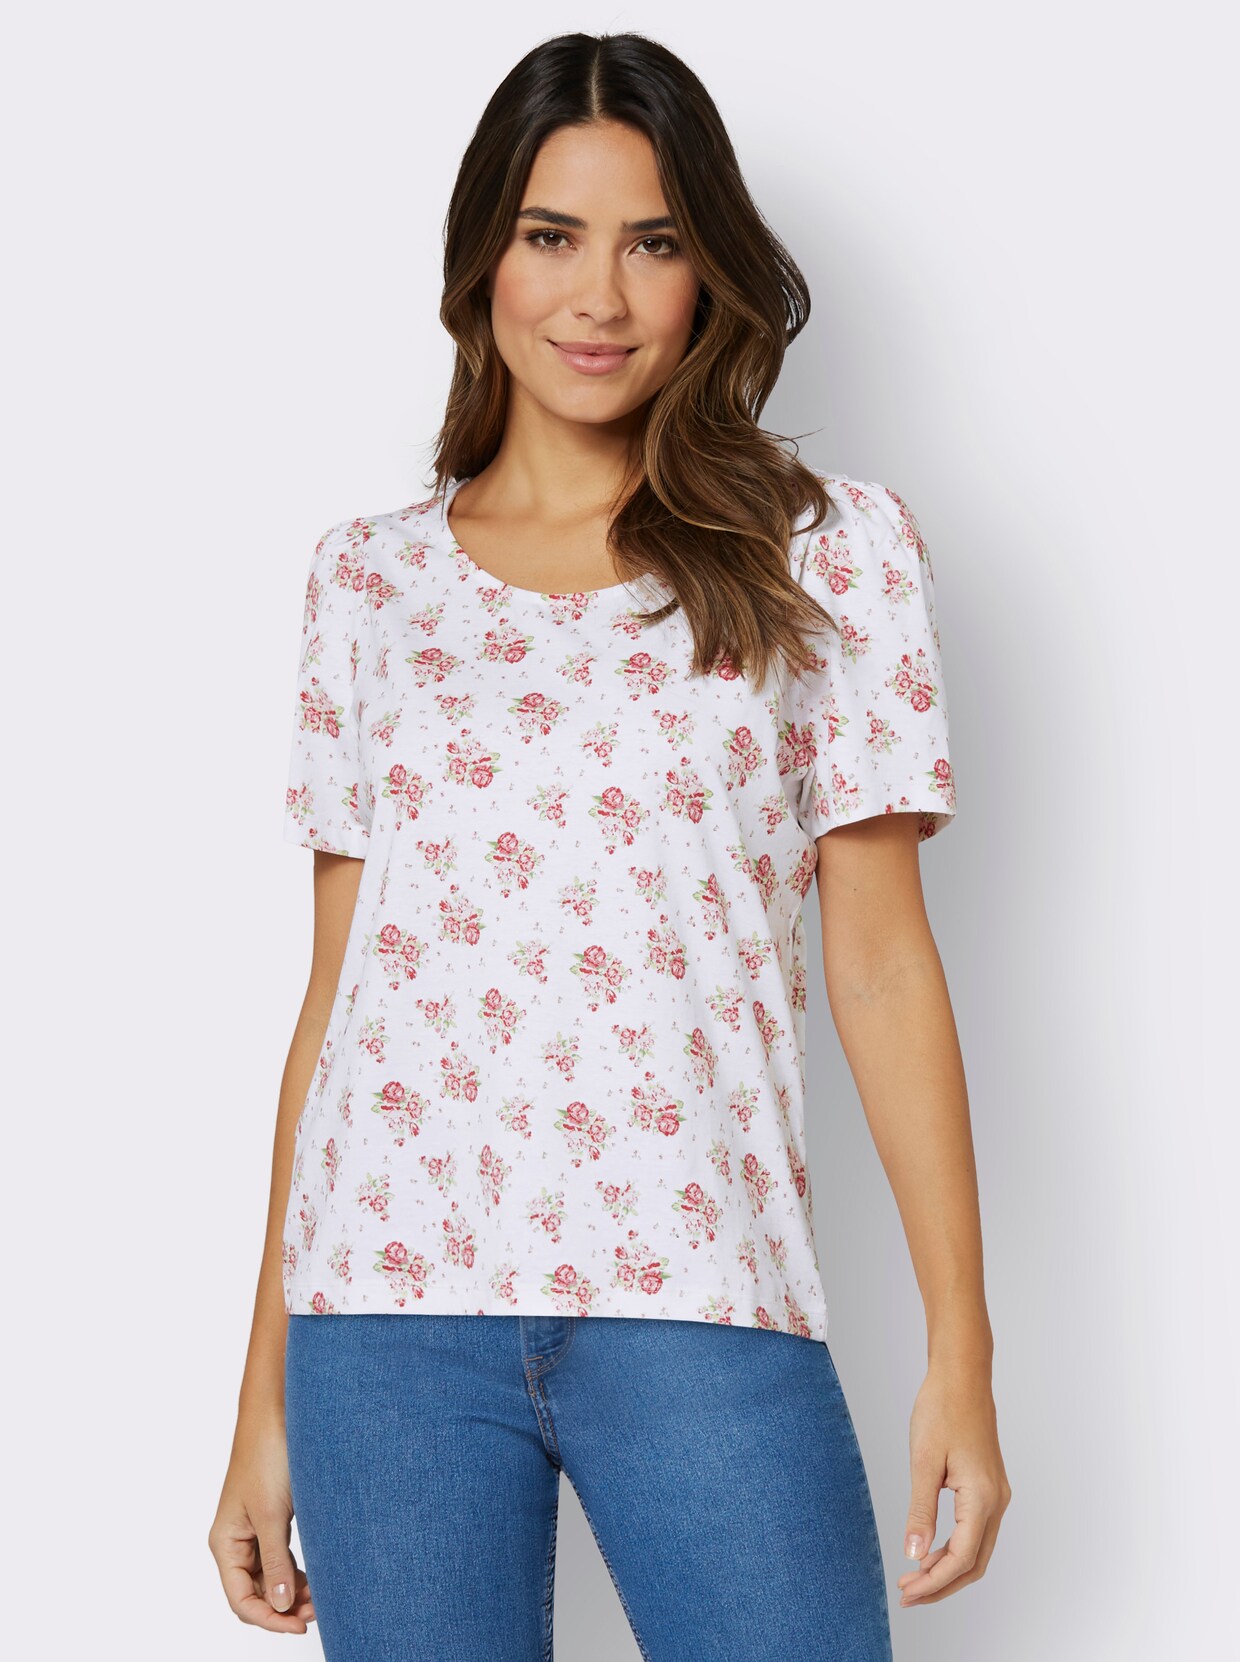 Tričko s krátkým rukávem - bílá-růžová-potisk